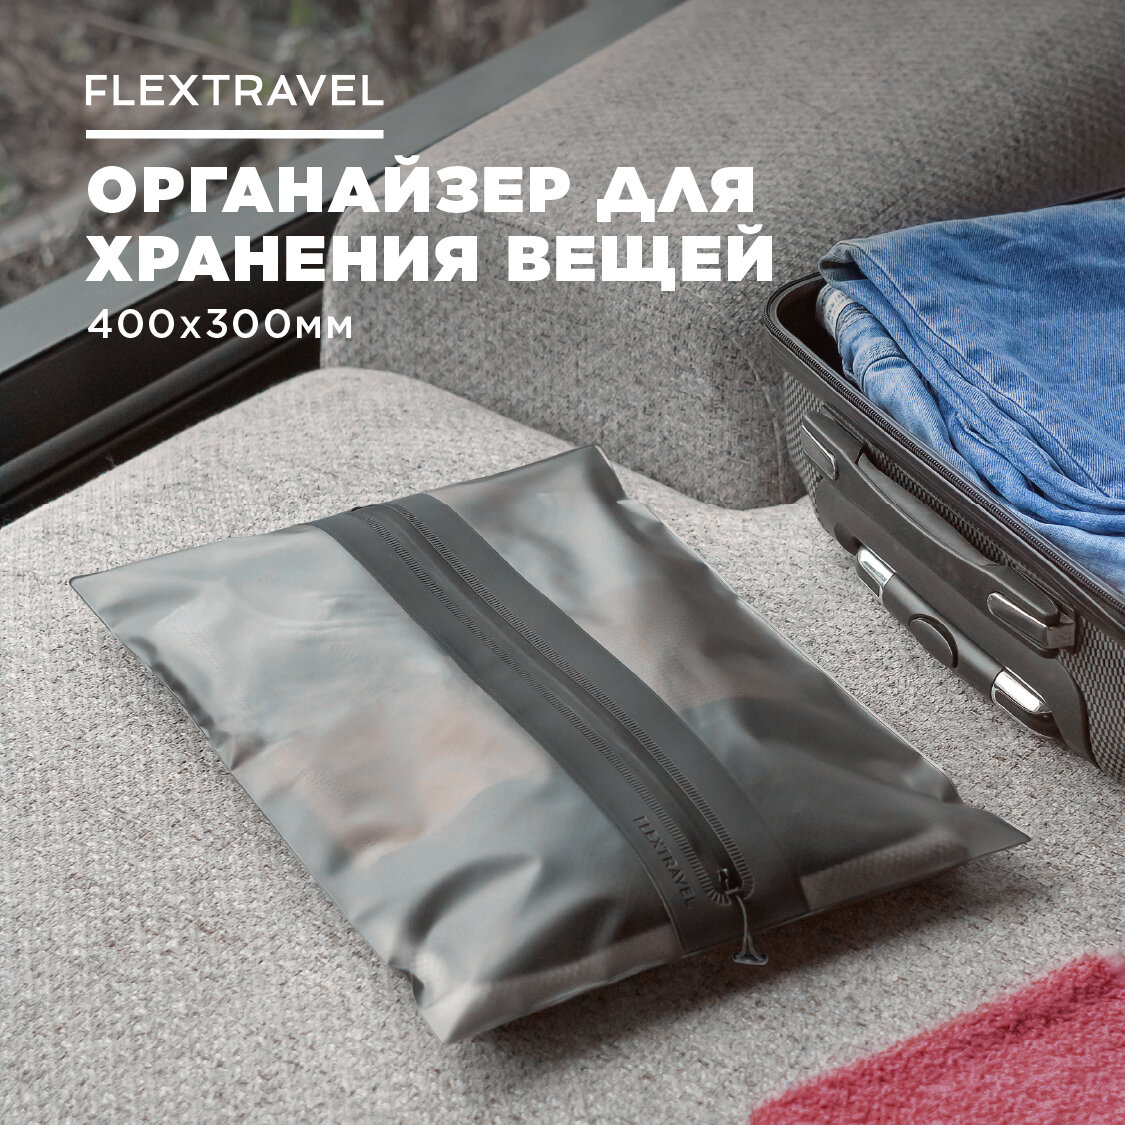 Органайзер FlexTravel для хранения вещей, чехол для одежды, пакеты на молнии для путешествий и поездок, размер 30х40 см - фотография № 1